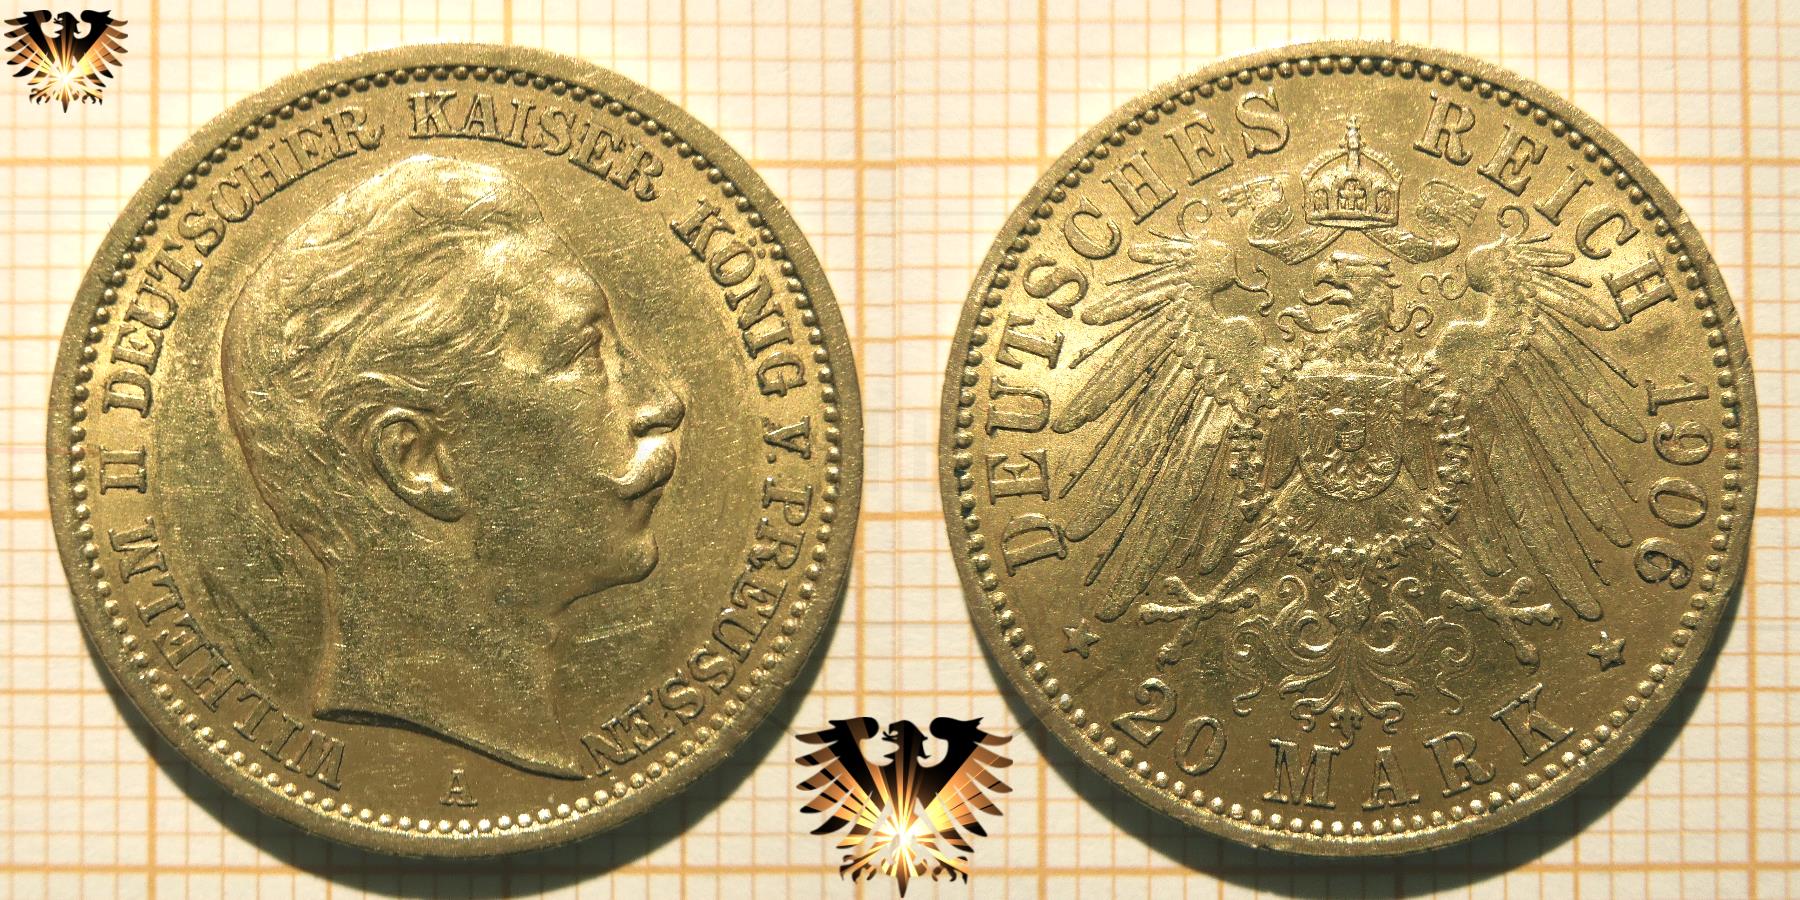 Referenzmünze 20 Goldmark Kaiserreich Goldmark aus Preussen, zur Erkennung der Echtheit von Reichsgoldmünzen.